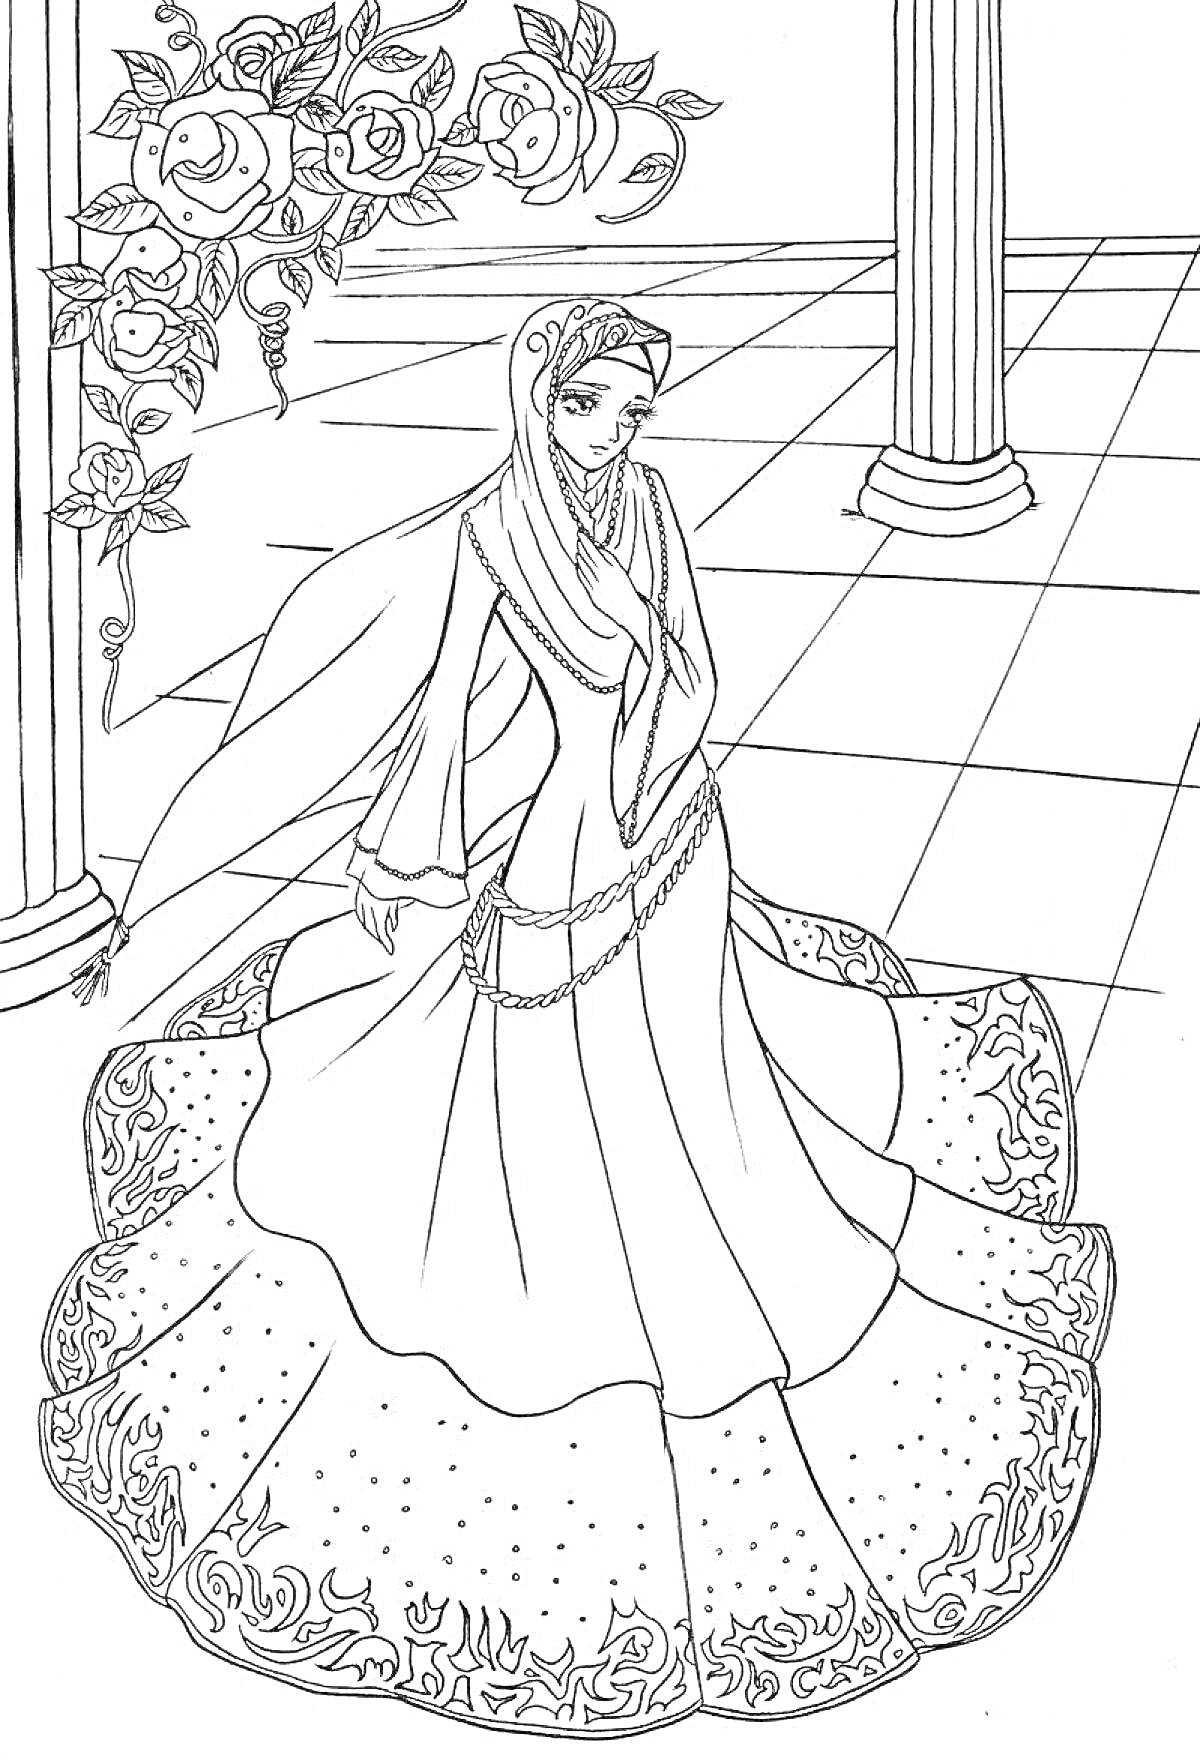 Раскраска Мусульманка в традиционной одежде под аркой с розами